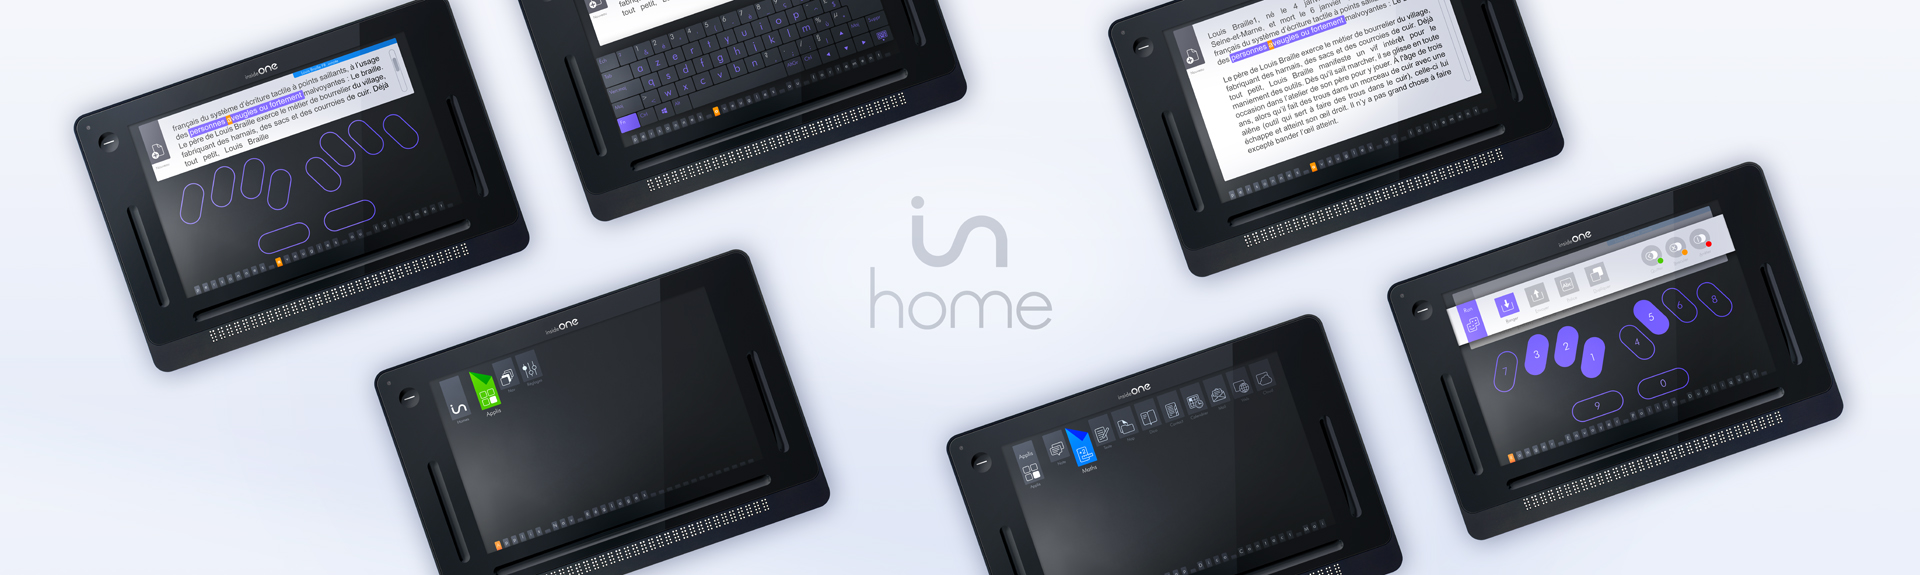 La photo représente plusieurs tablettes insideONE allumées avec différents écrans selon les applications de HOME.